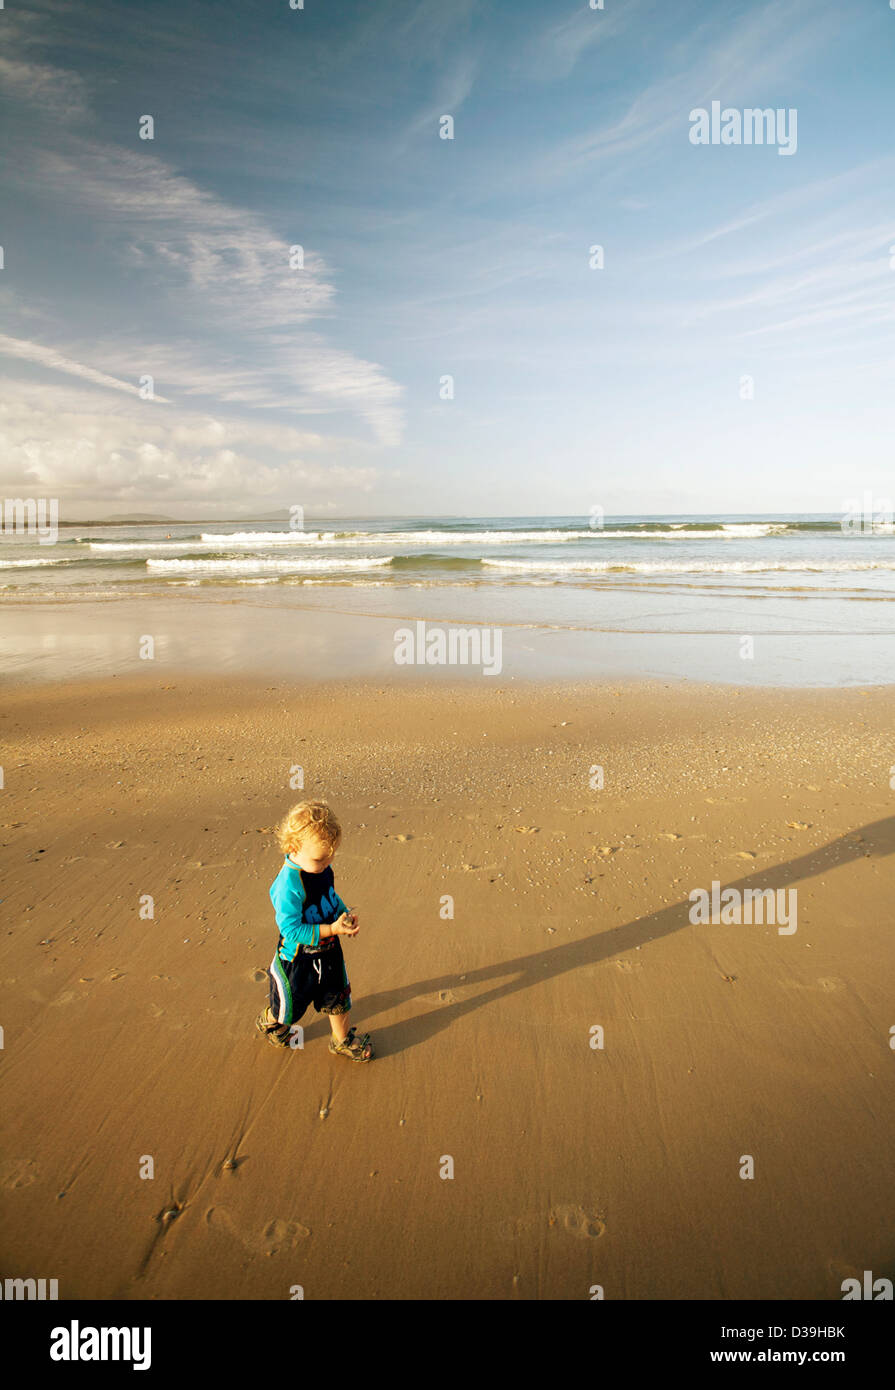 Petit garçon en maillot bleu / sunsuit sur une plage Banque D'Images